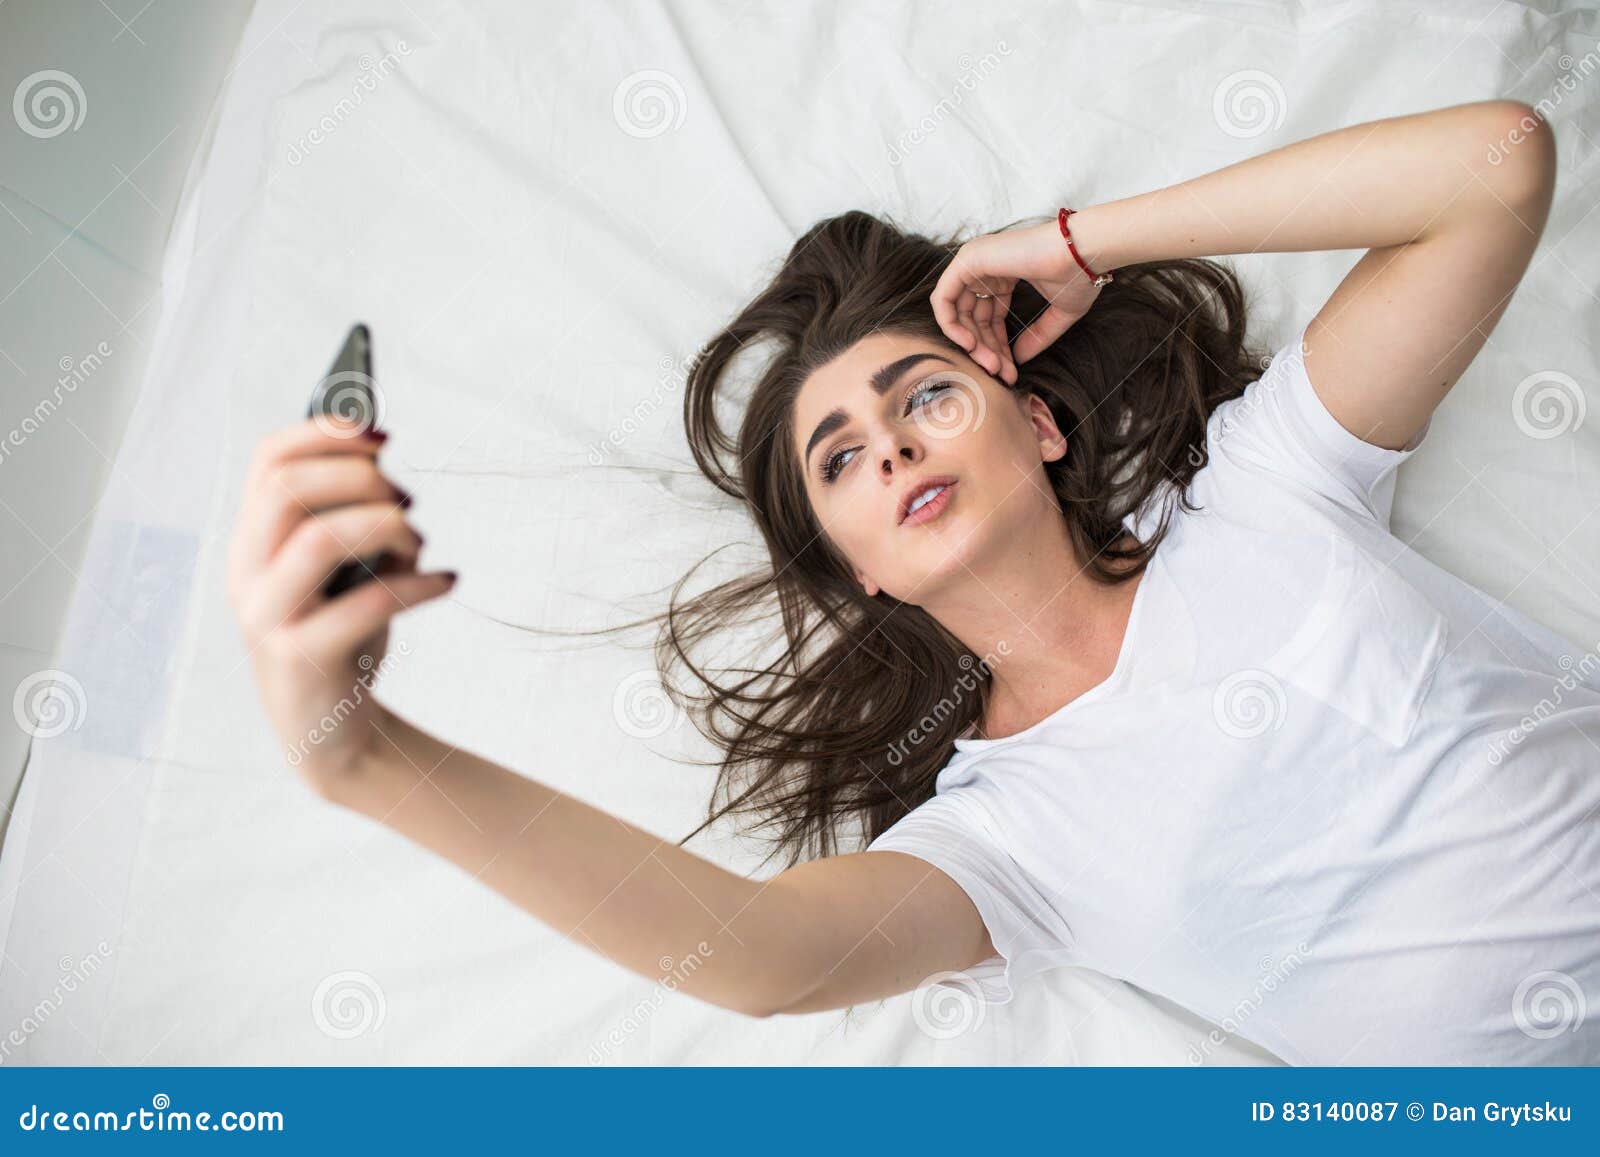 Mujer En Su Tomar De La Selfy Imagen Imagen de adulto, esfuerzo: 83140087